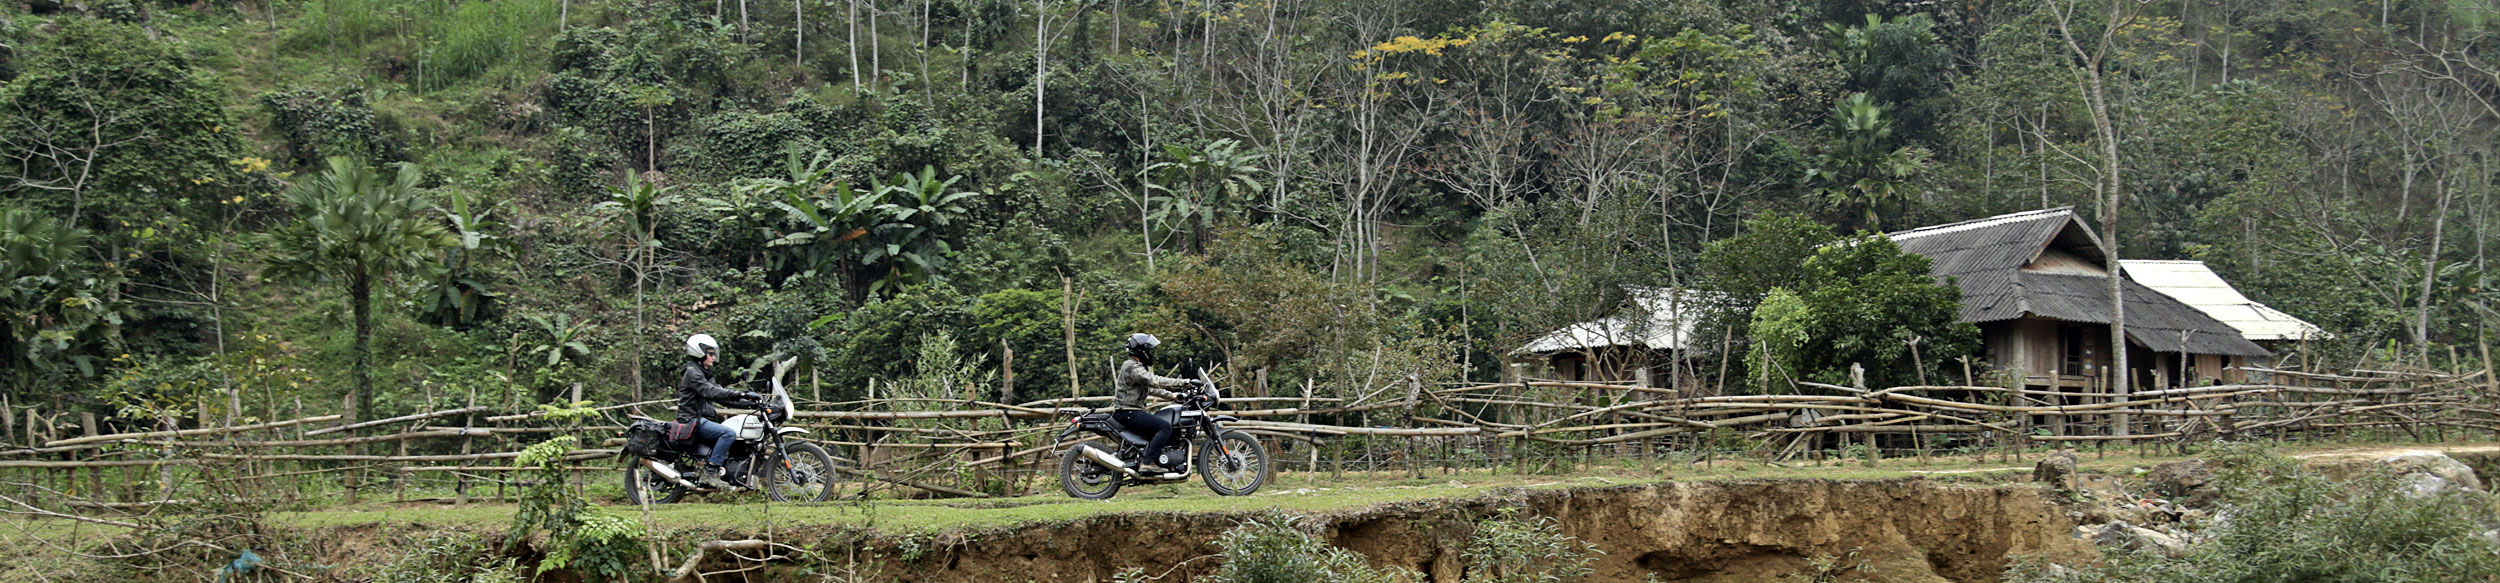 Le Vietnam en moto, vue à Ngoc Son